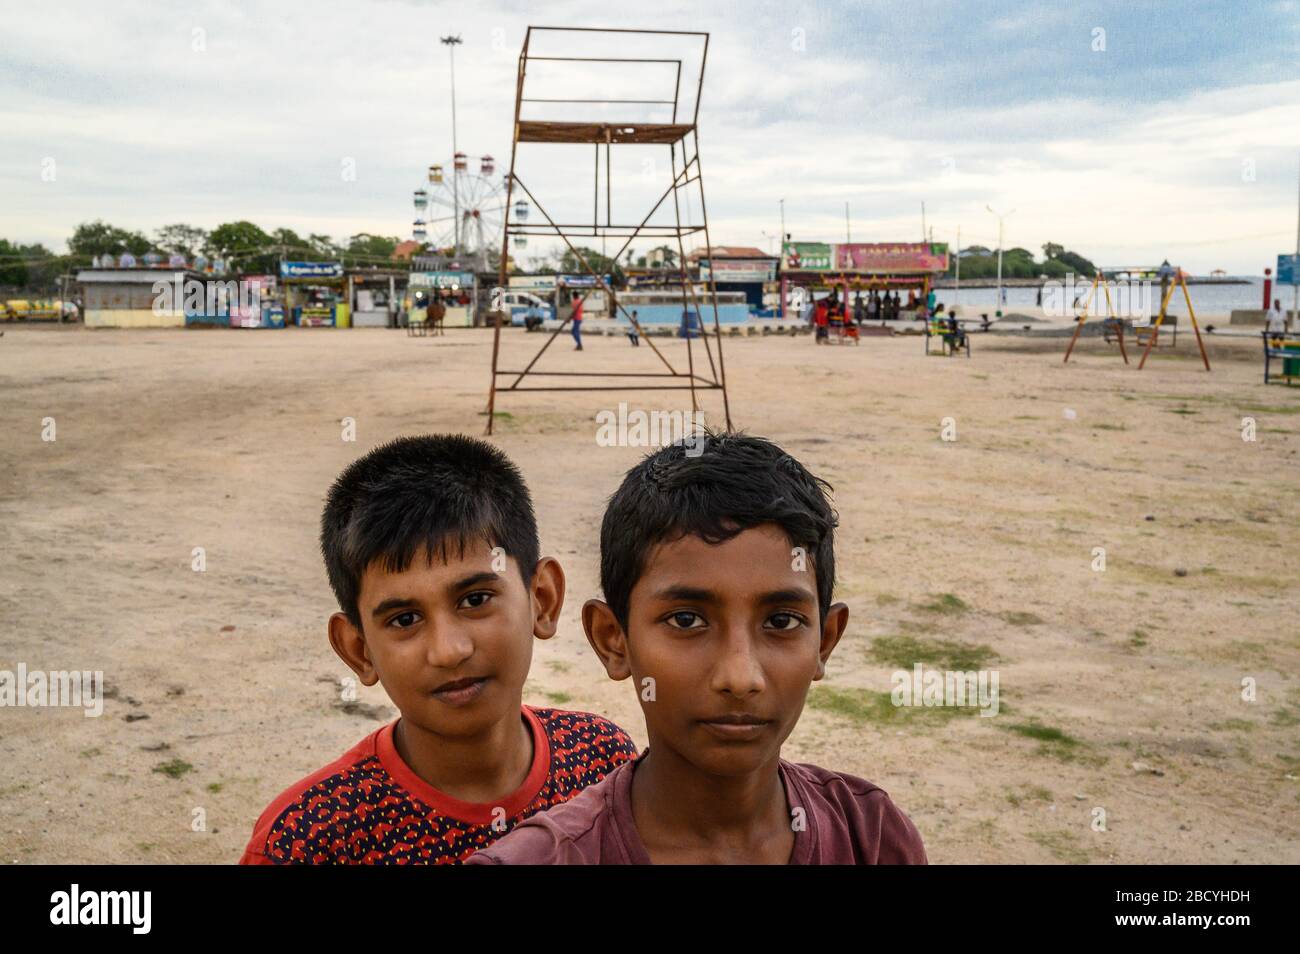 A portrait of two boys, Tuticorin , India Stock Photo